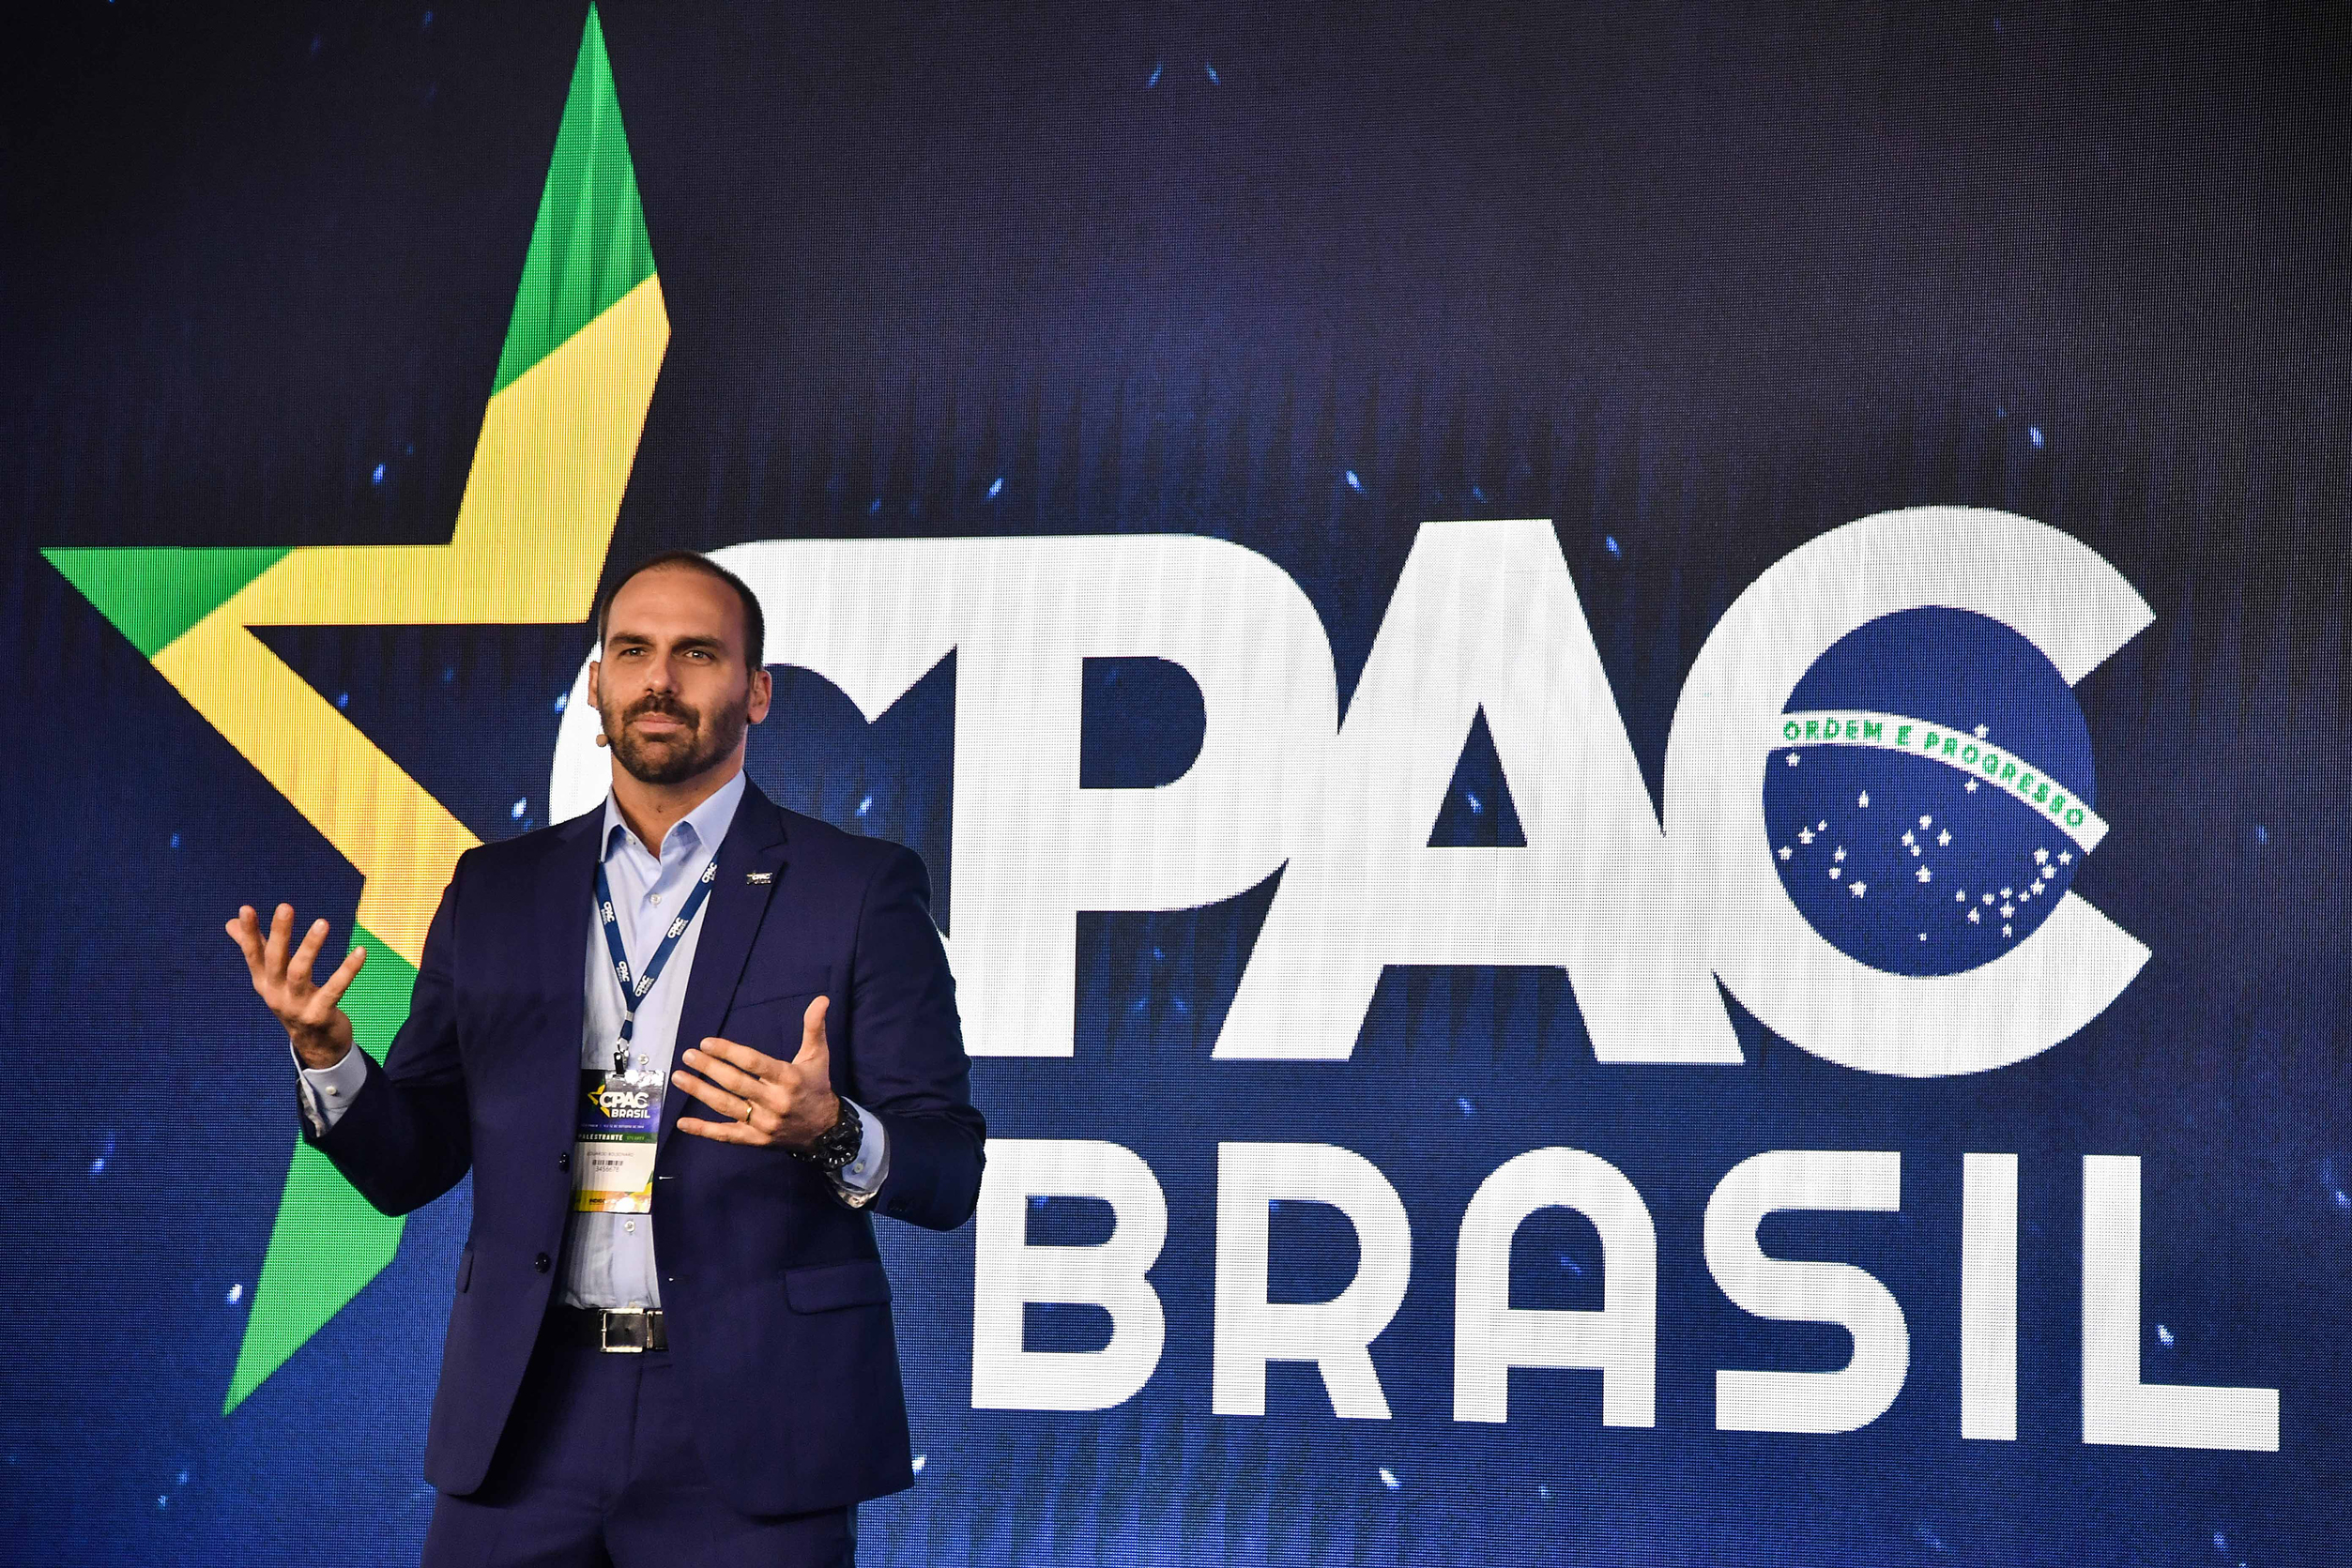 Nghị sĩ Eduardo Bolsonaro, con trai của cựu Tổng thống Brazil Jair Bolsonaro, trình bày trong Hội nghị Hành động Chính trị Bảo tồn Truyền thống ở Sao Paulo, Brazil, vào ngày 11/10/2019. (Ảnh: Nelson Almeida/AFP qua Getty Images)